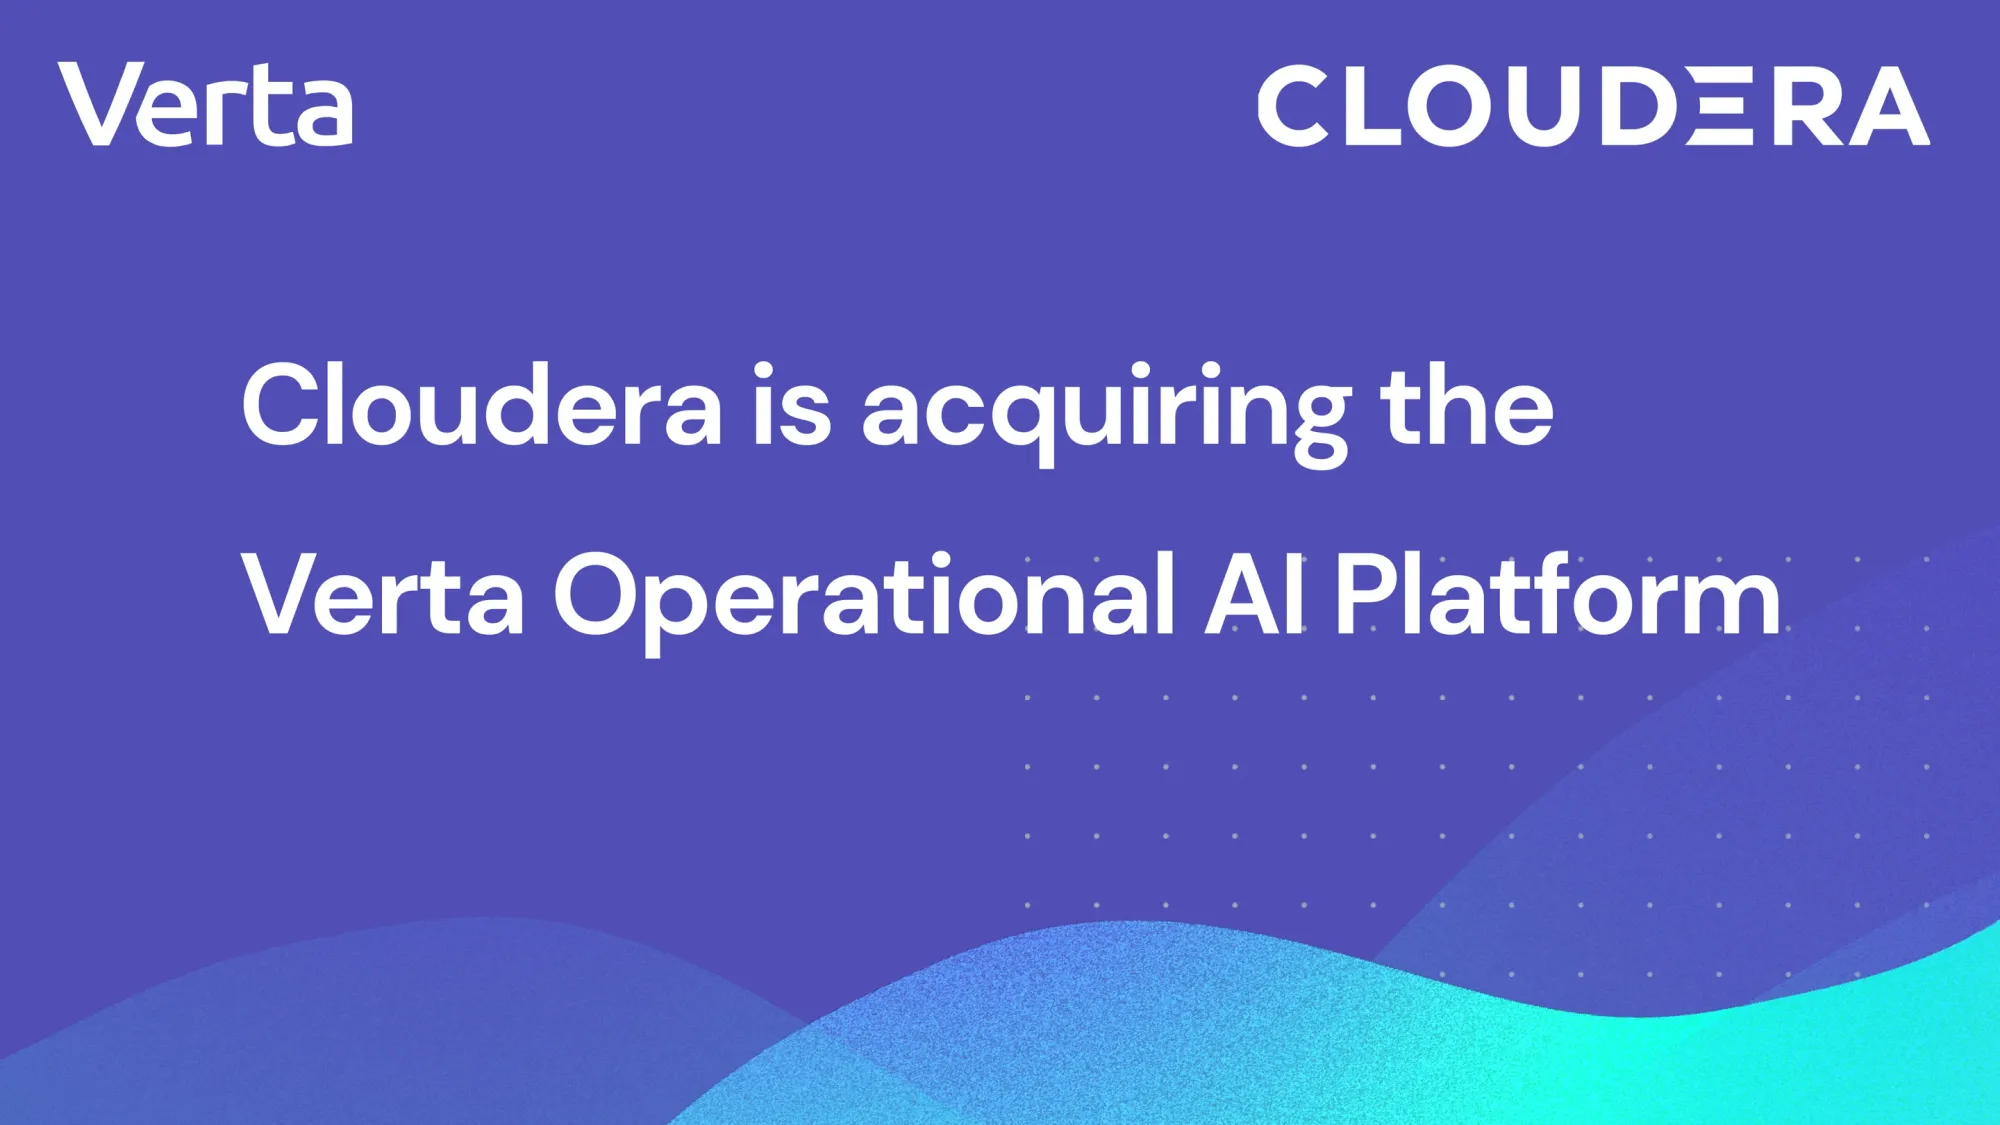 Cloudera acquired Verta to accelerate Enterprise AI